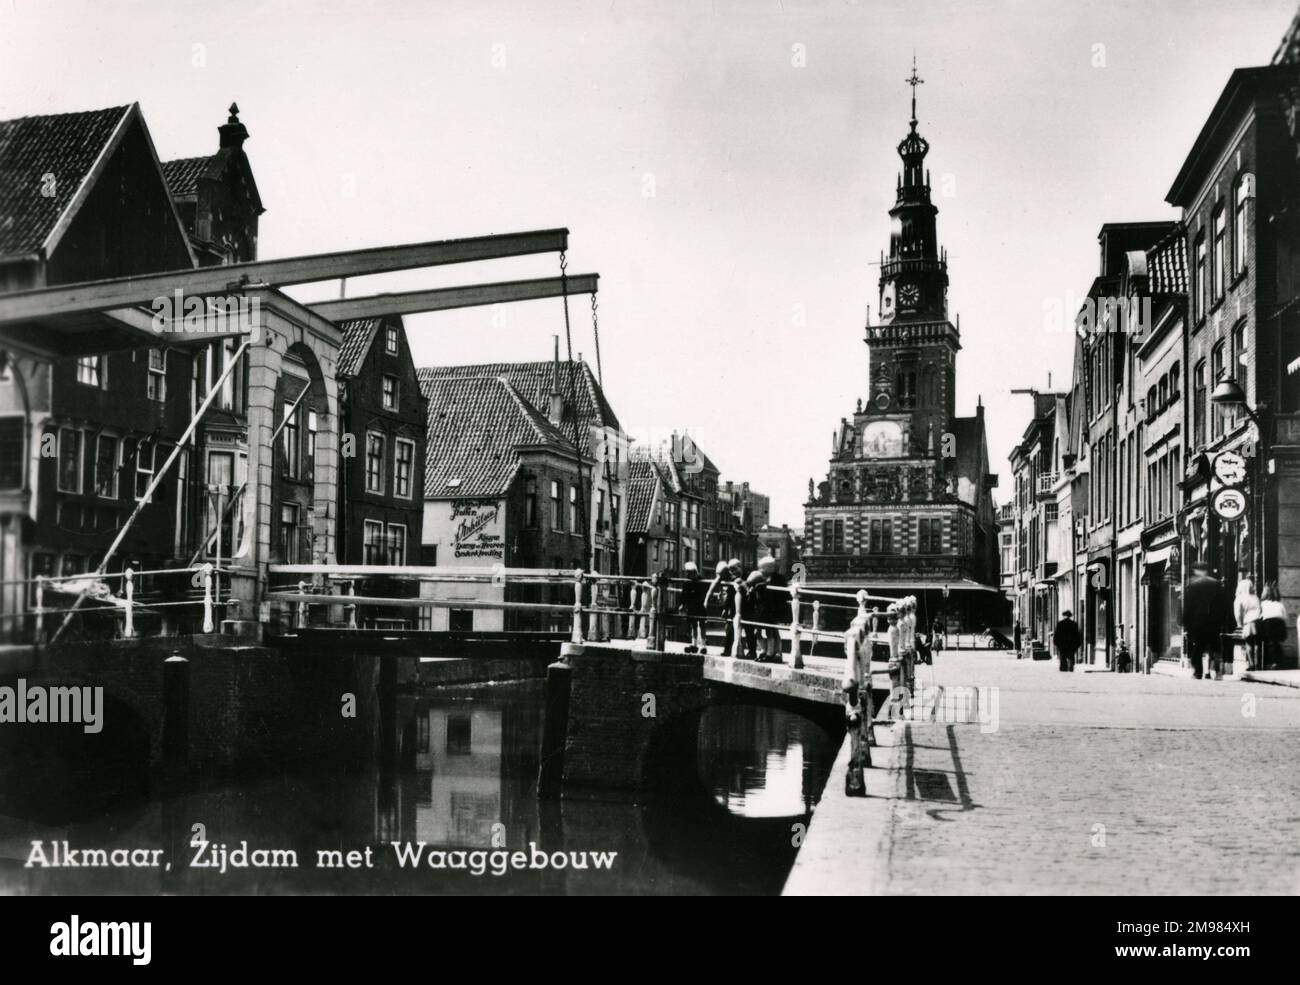 Alkmaar, Zijdam mit Waag-Gebäude - Niederlande. Bild einer Brücke über den Kanal mit dem Waag-Gebäude oder dem Waaghaus im Hintergrund. Das Waag beherbergt jetzt das Käsemuseum. Das Gebäude war ursprünglich eine Kapelle, die um 1390 erbaut wurde und 1582 in ein städtisches Wiegehaus umgewandelt wurde. Stockfoto